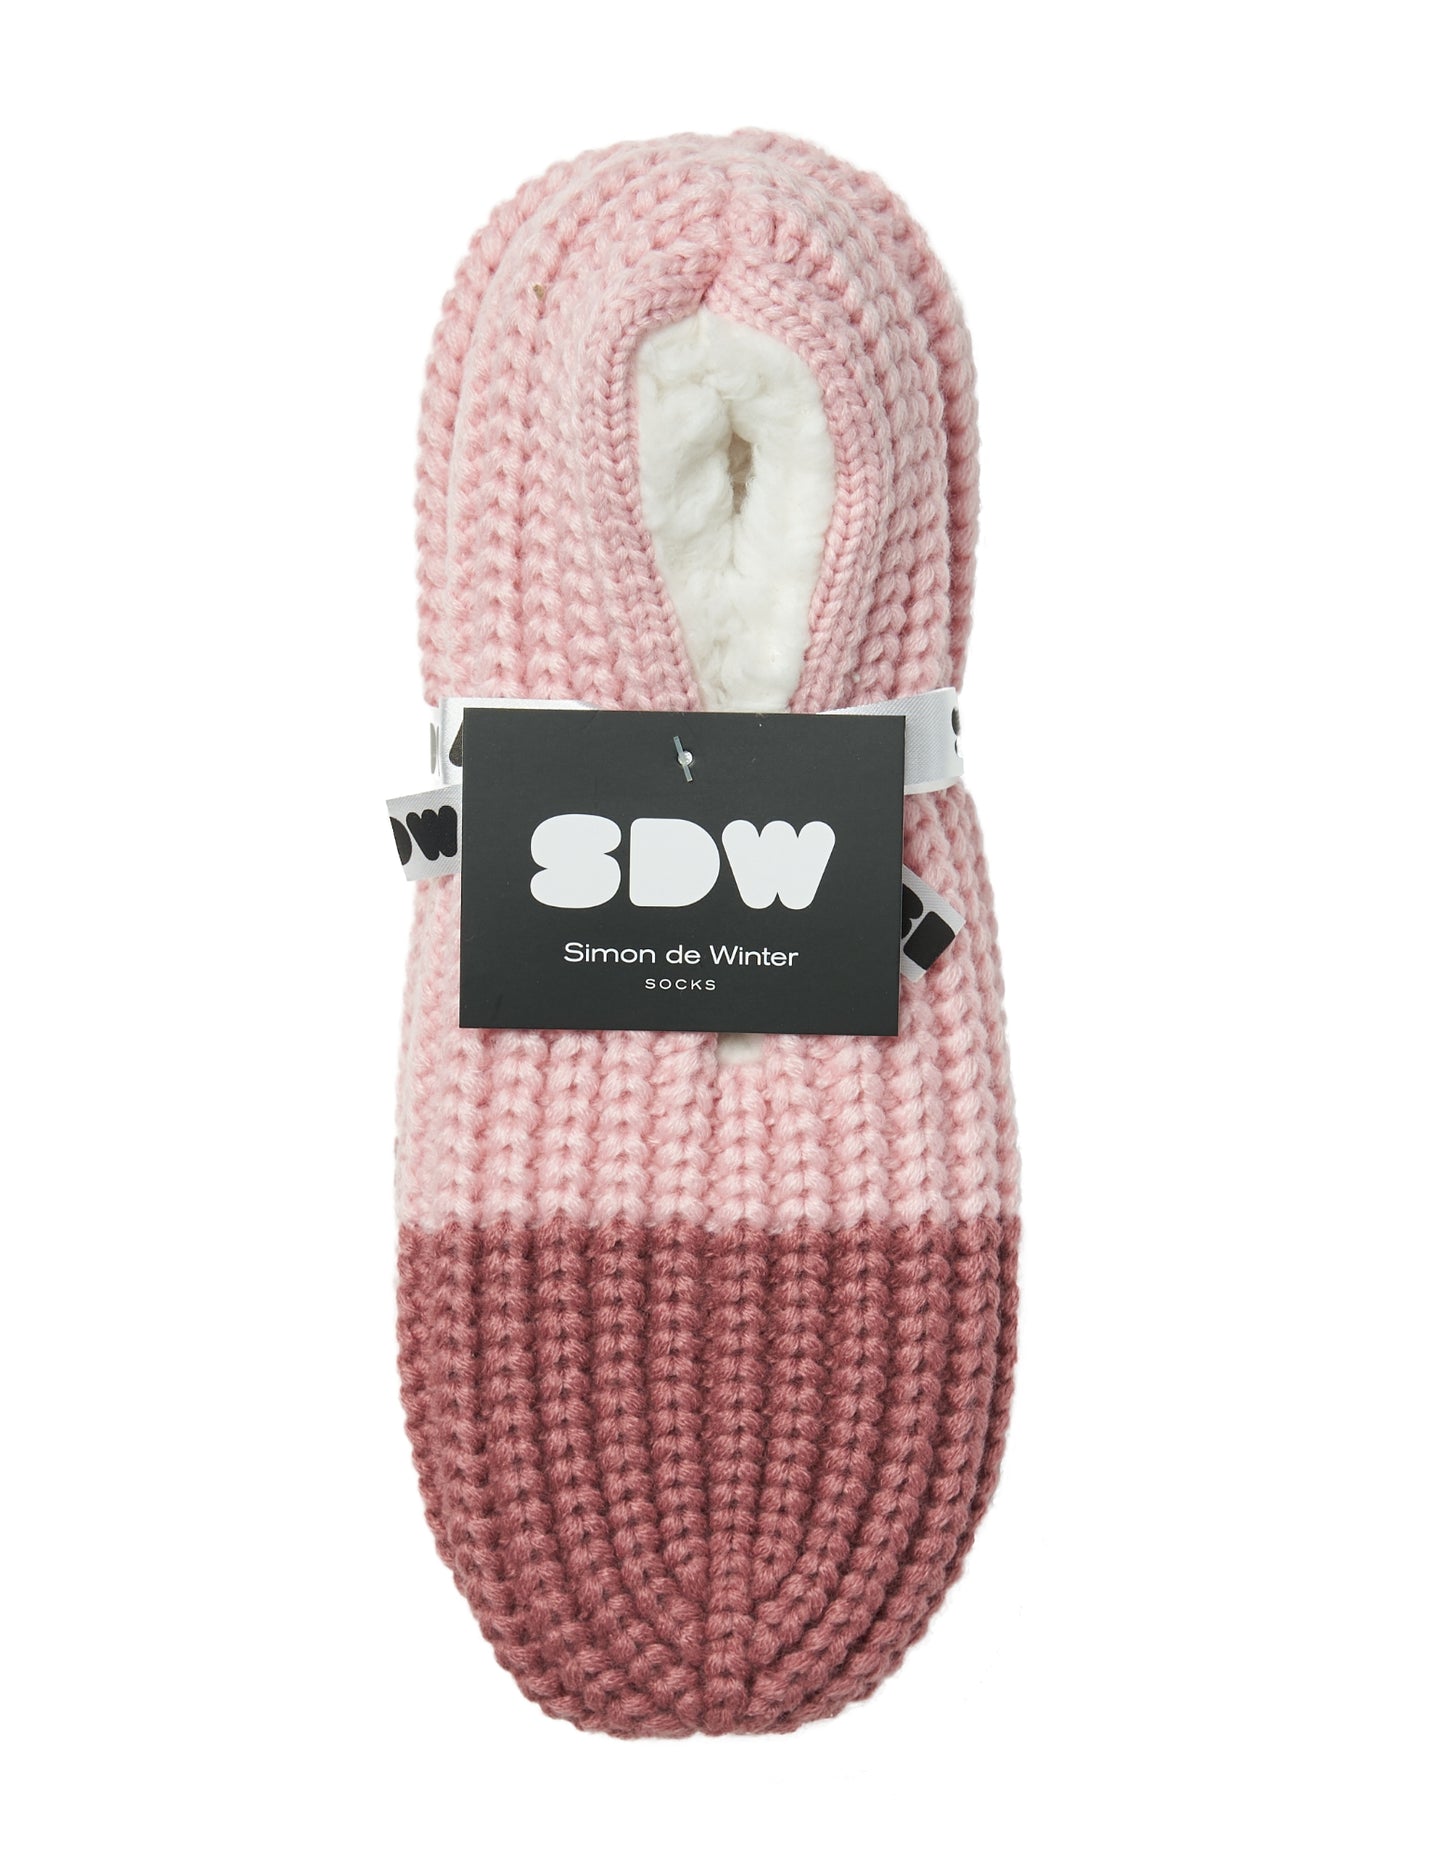 Simon de Winter Women's Slipper Home Socks in Soft Pink/Cinnamon